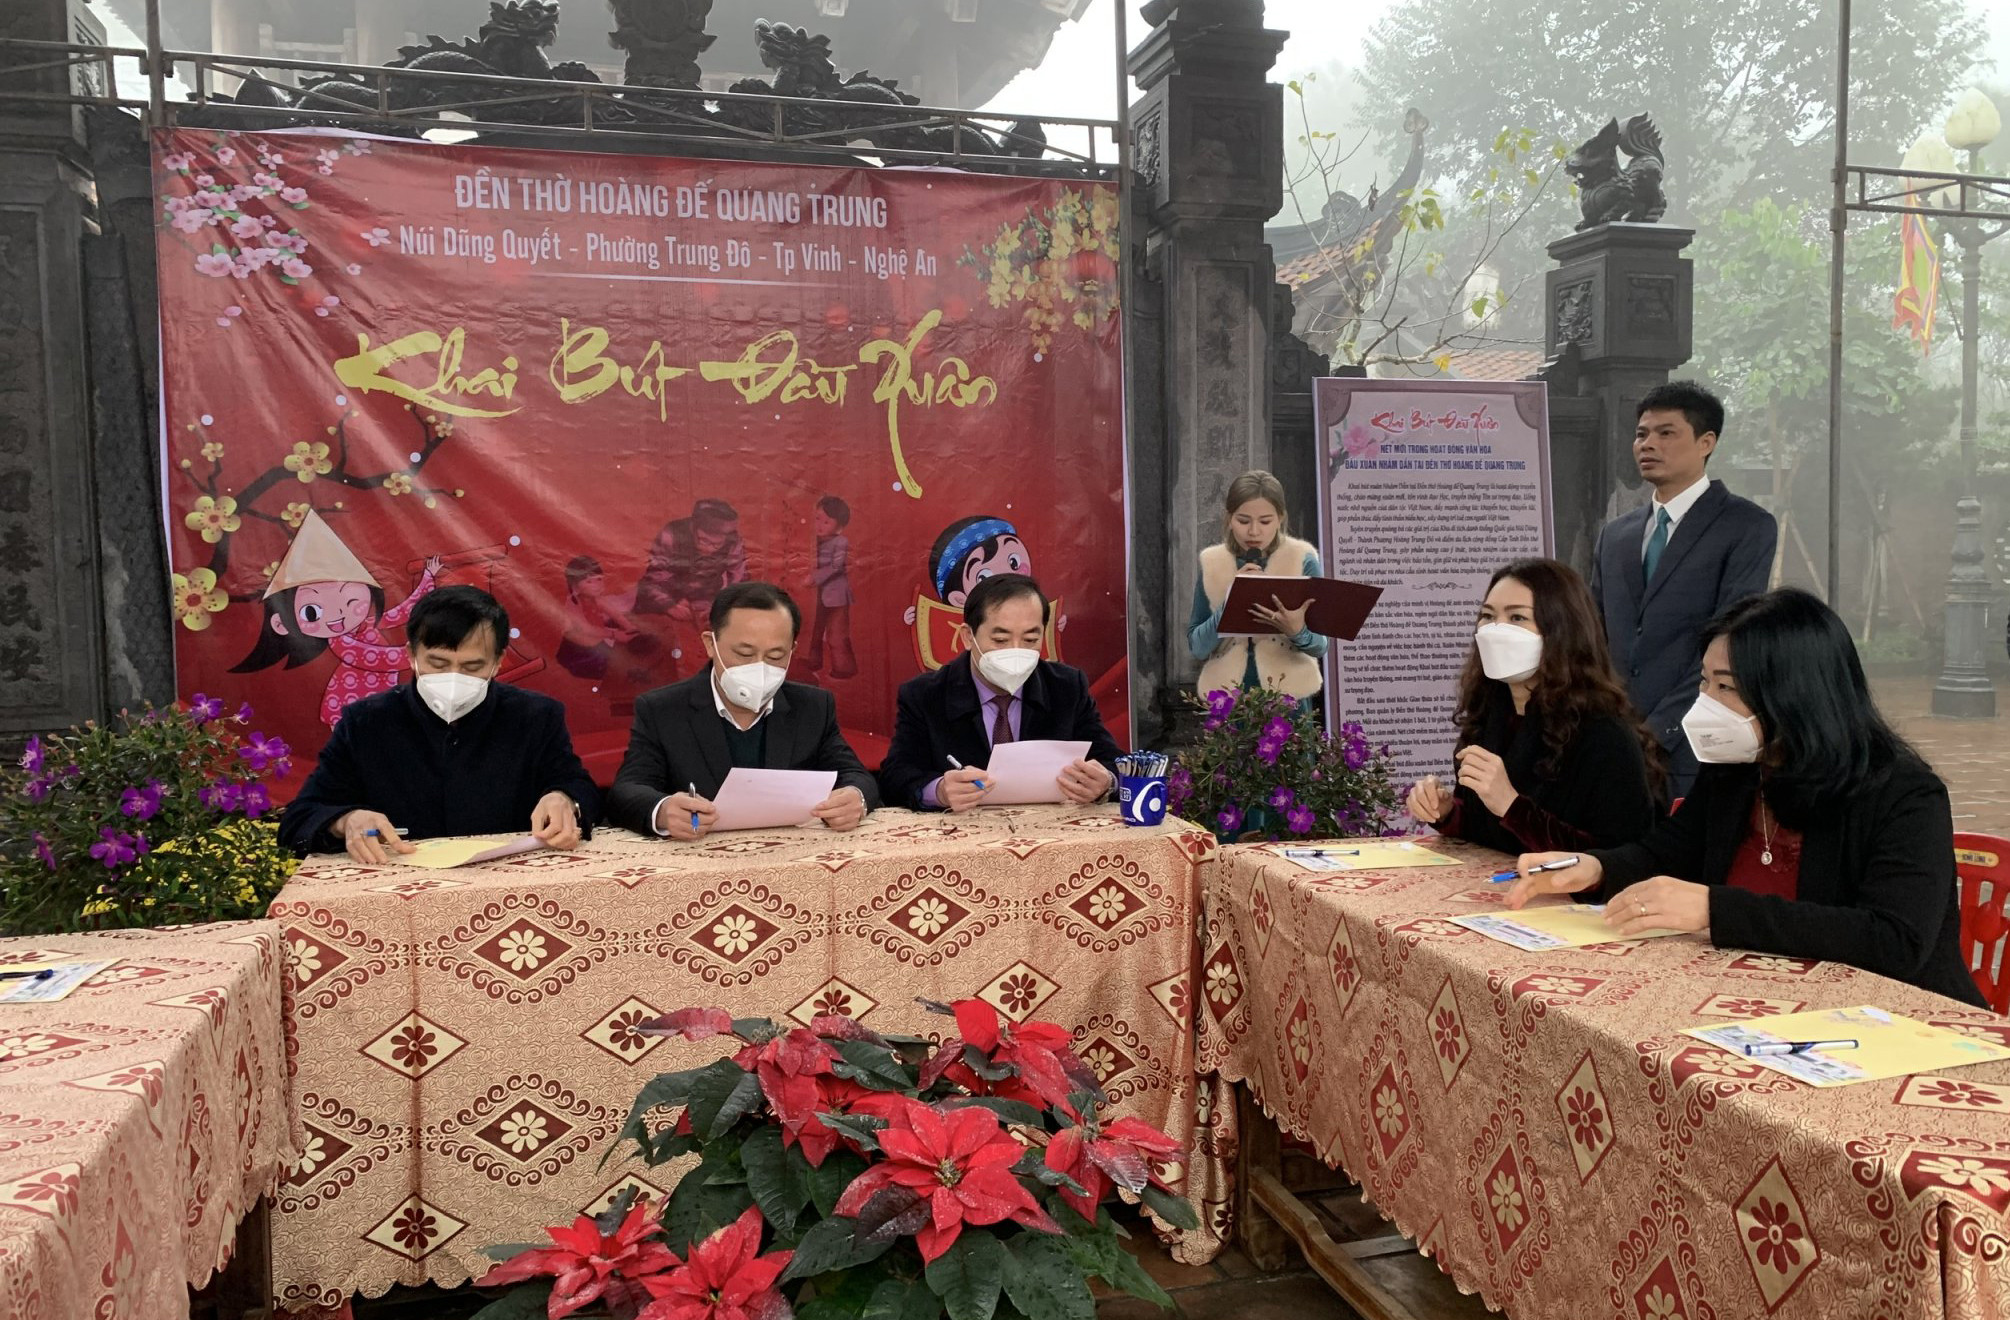 Đồng chí Phan Đức Đồng và các đồng chí lãnh đạo thành phố Vinh khai bút đầu xuân tại đền thờ Hoàng đế Quang Trung. Ảnh: Ngân Hà